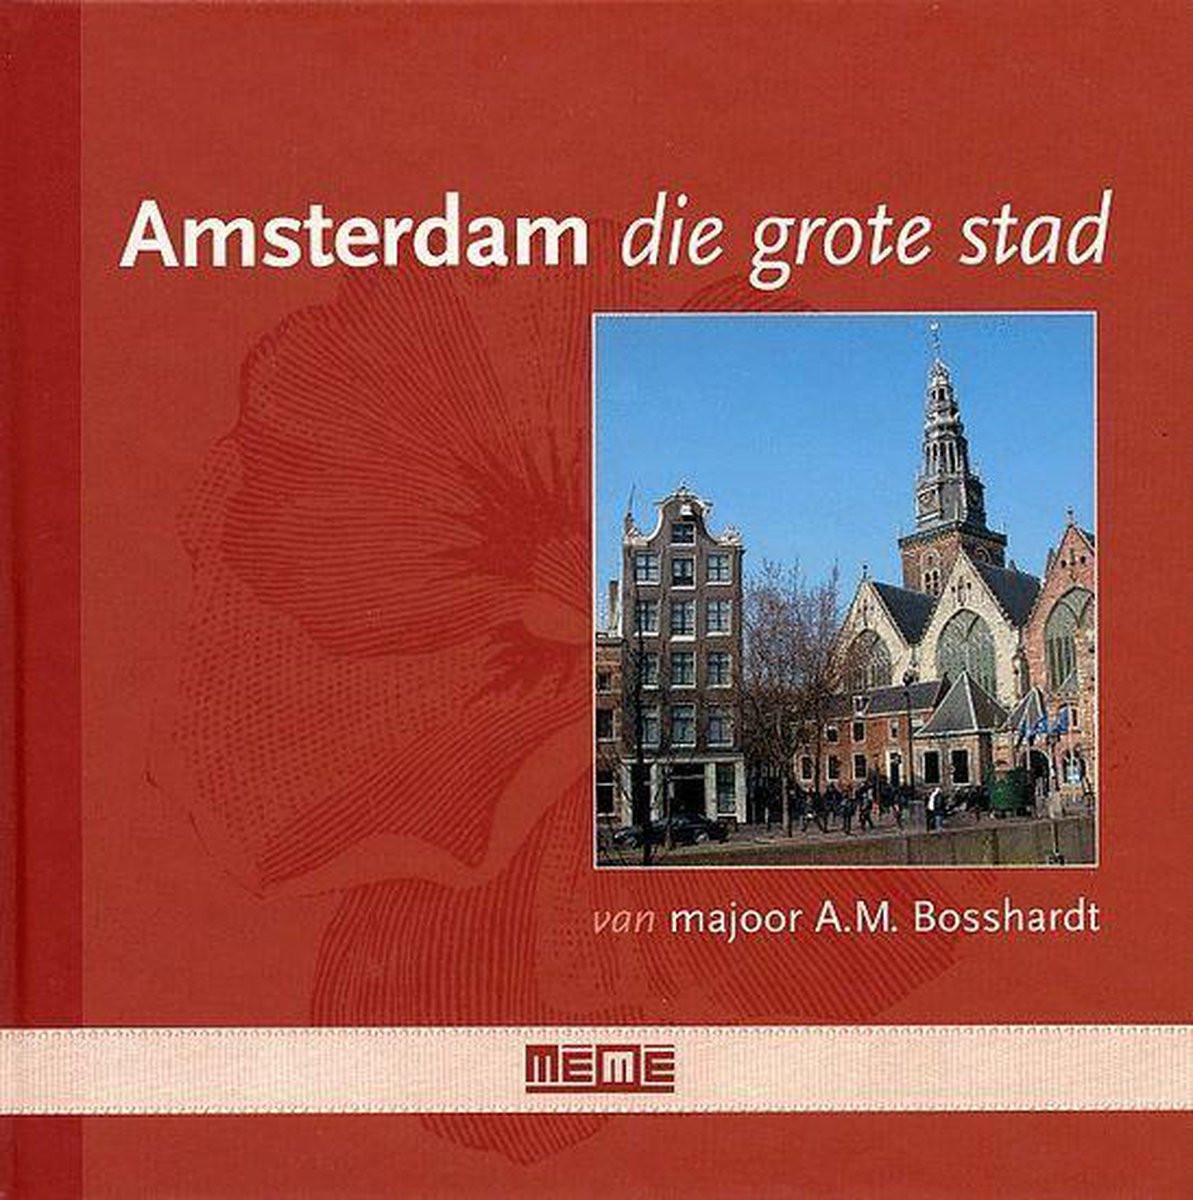 Amsterdam die grote stad van majoor A.M. Bosshardt / Viooltjesreeks